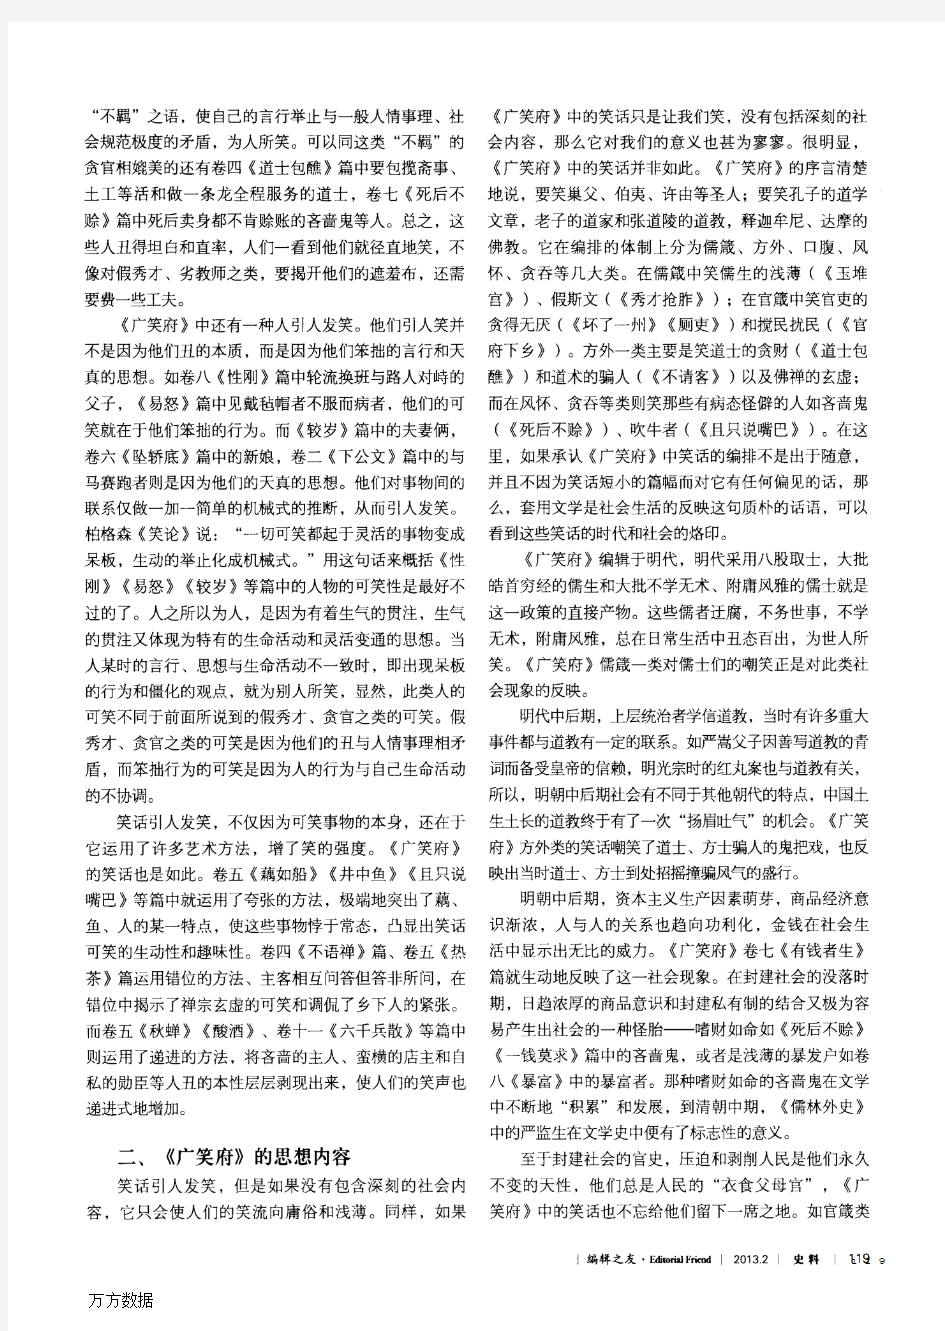 浅议冯梦龙编辑的《广笑府》兼及中国古代笑话的编辑